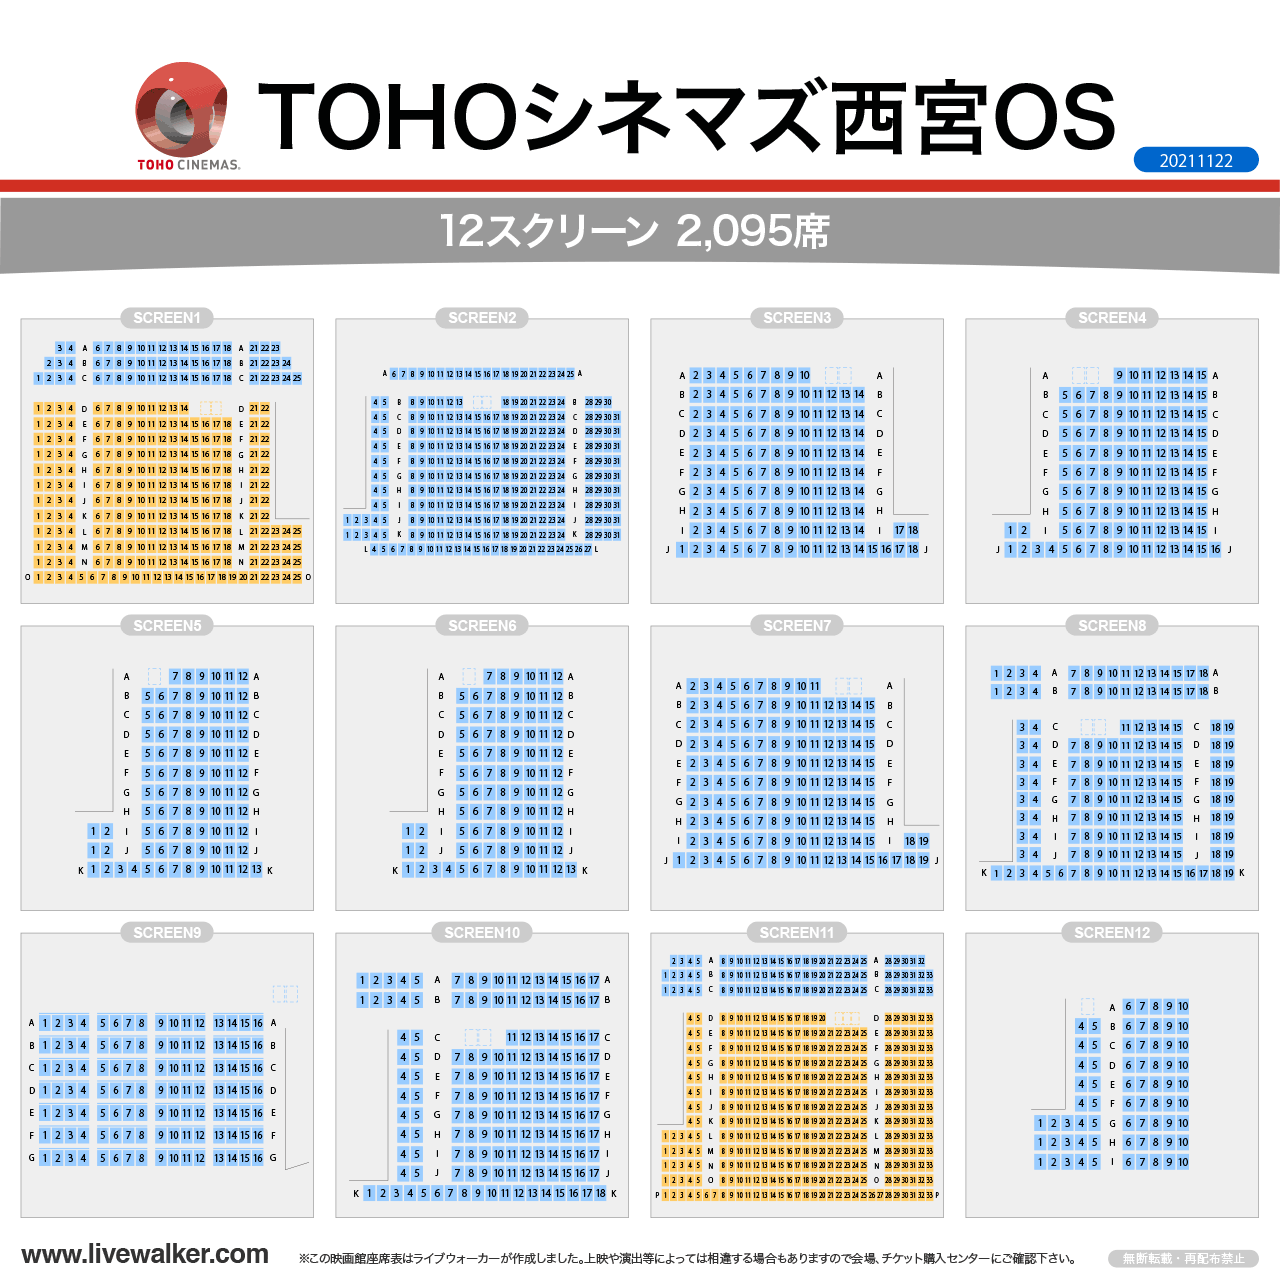 TOHOシネマズ西宮OSスクリーンの座席表